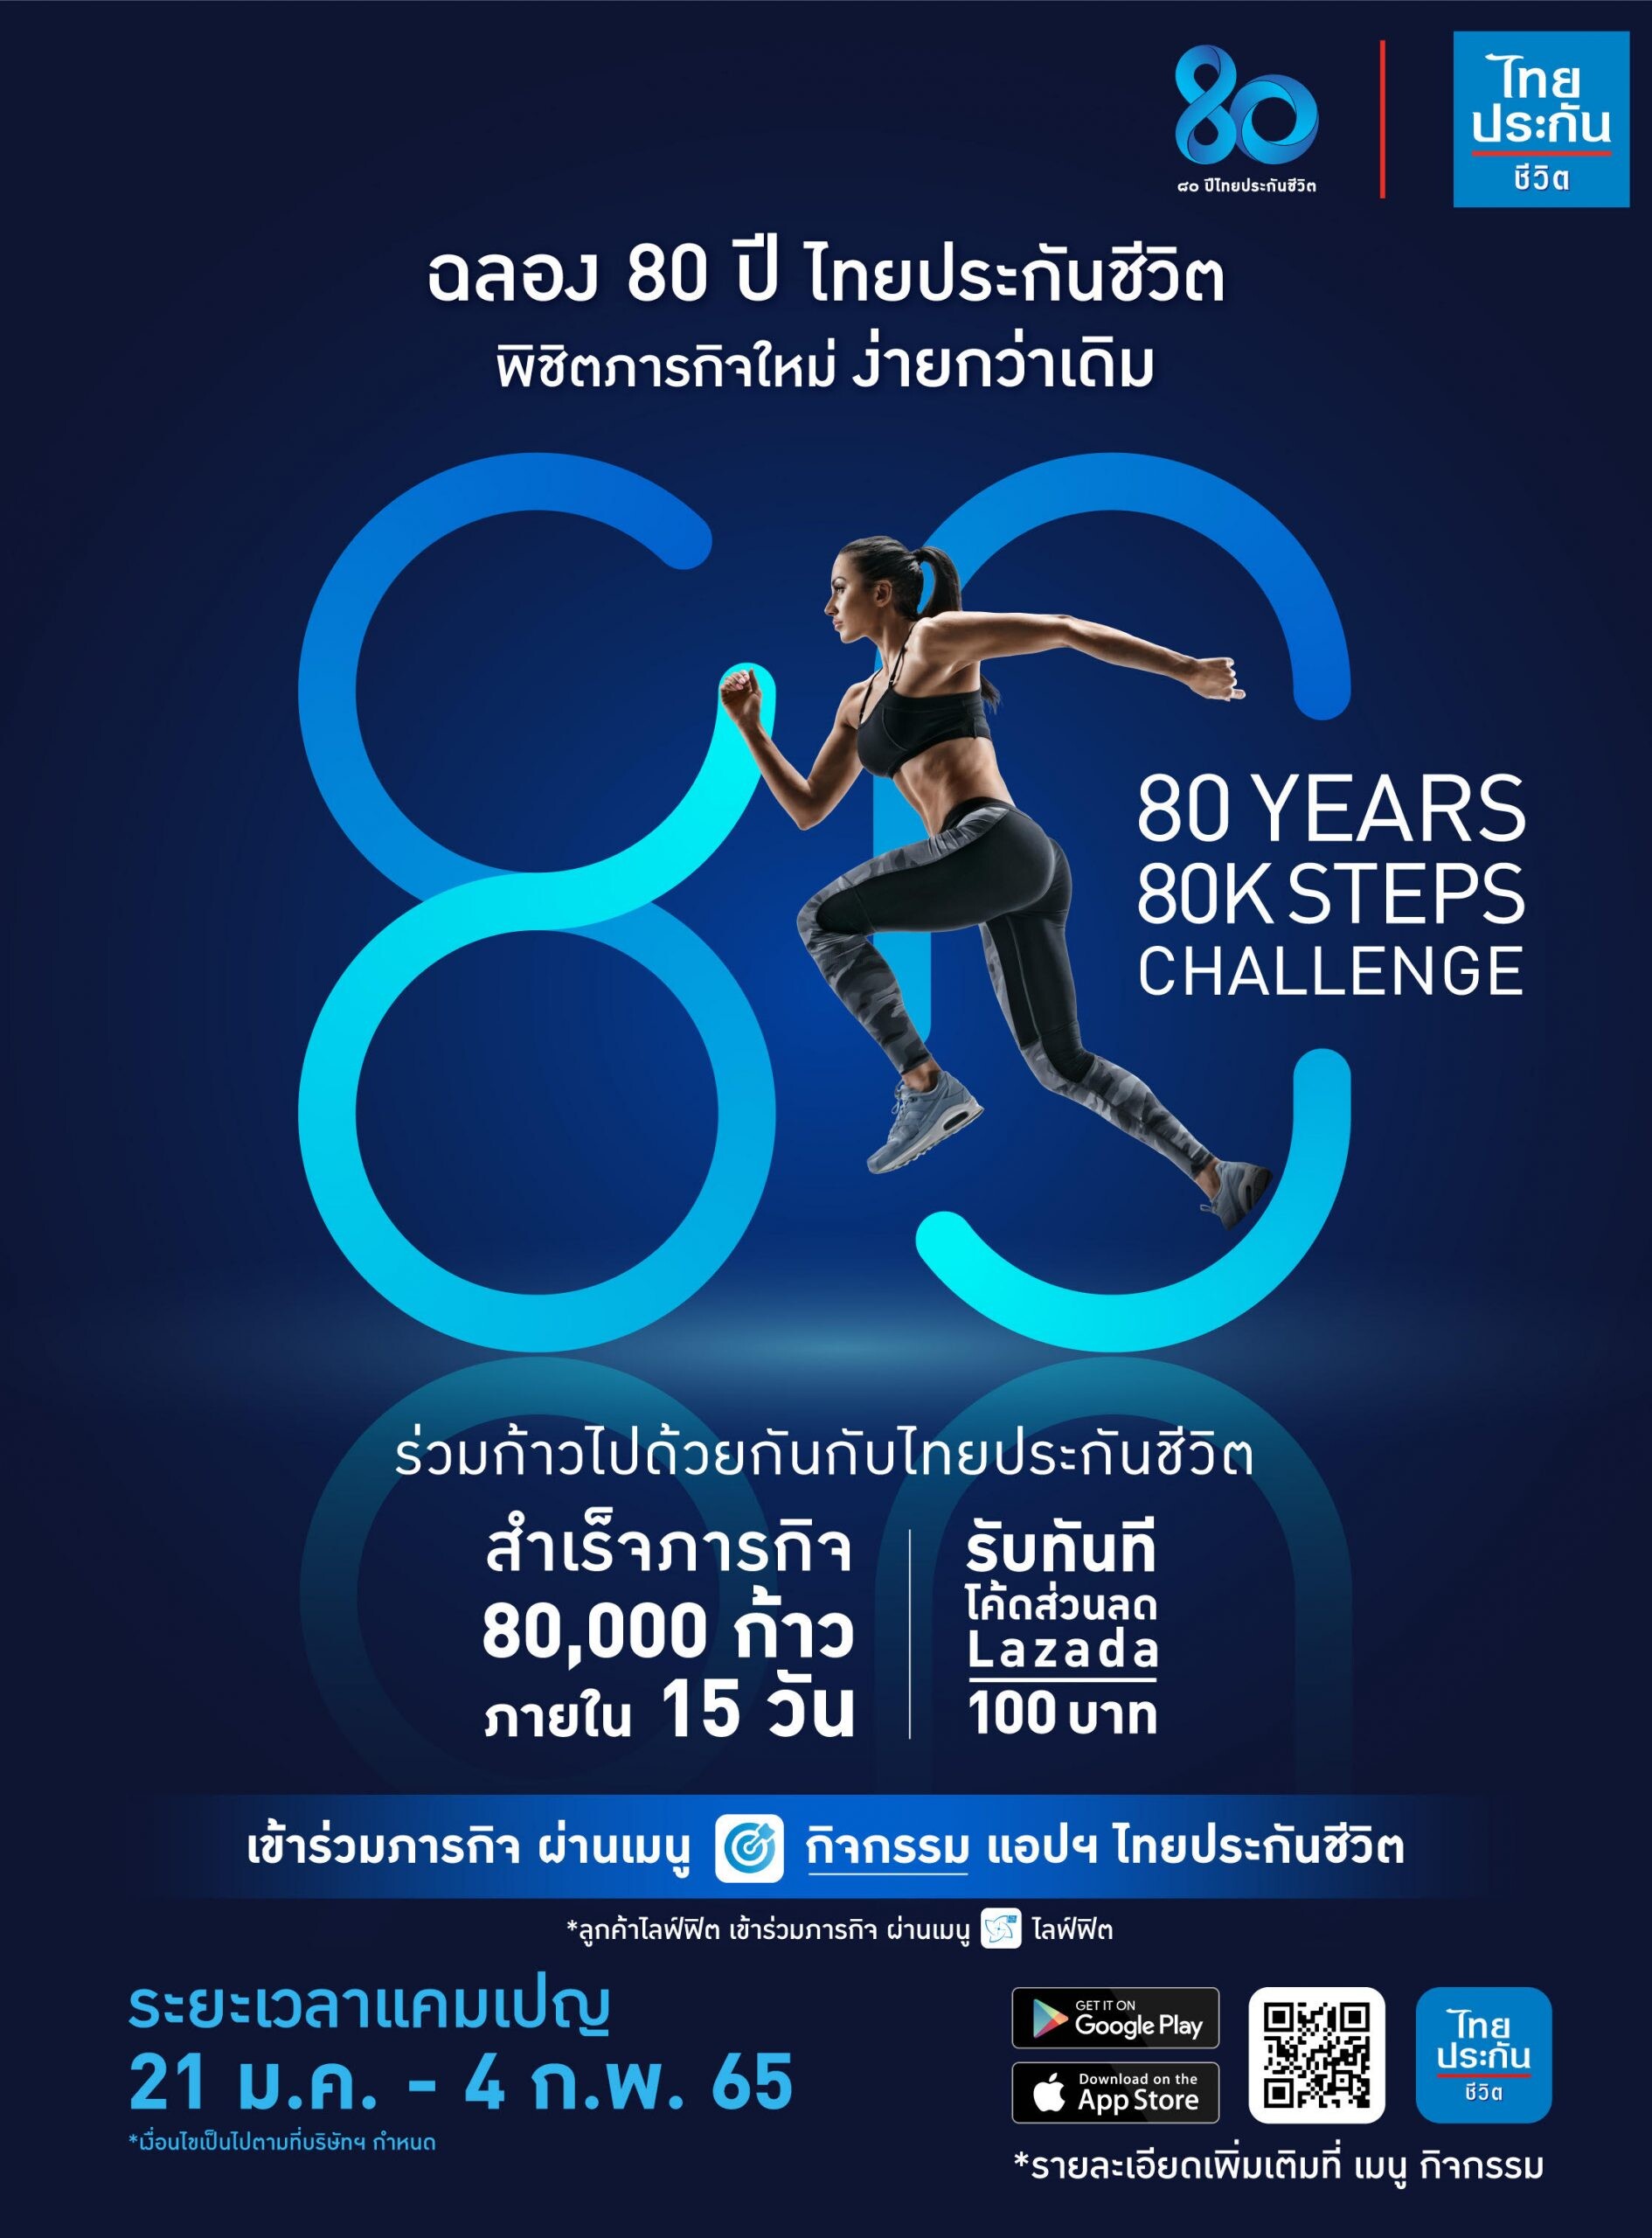 ไทยประกันชีวิต ส่งเสริมสุขภาพดีของคนไทย จัดกิจกรรม 80 ปี ไทยประกันชีวิต พิชิตภารกิจ 80,000 ก้าว